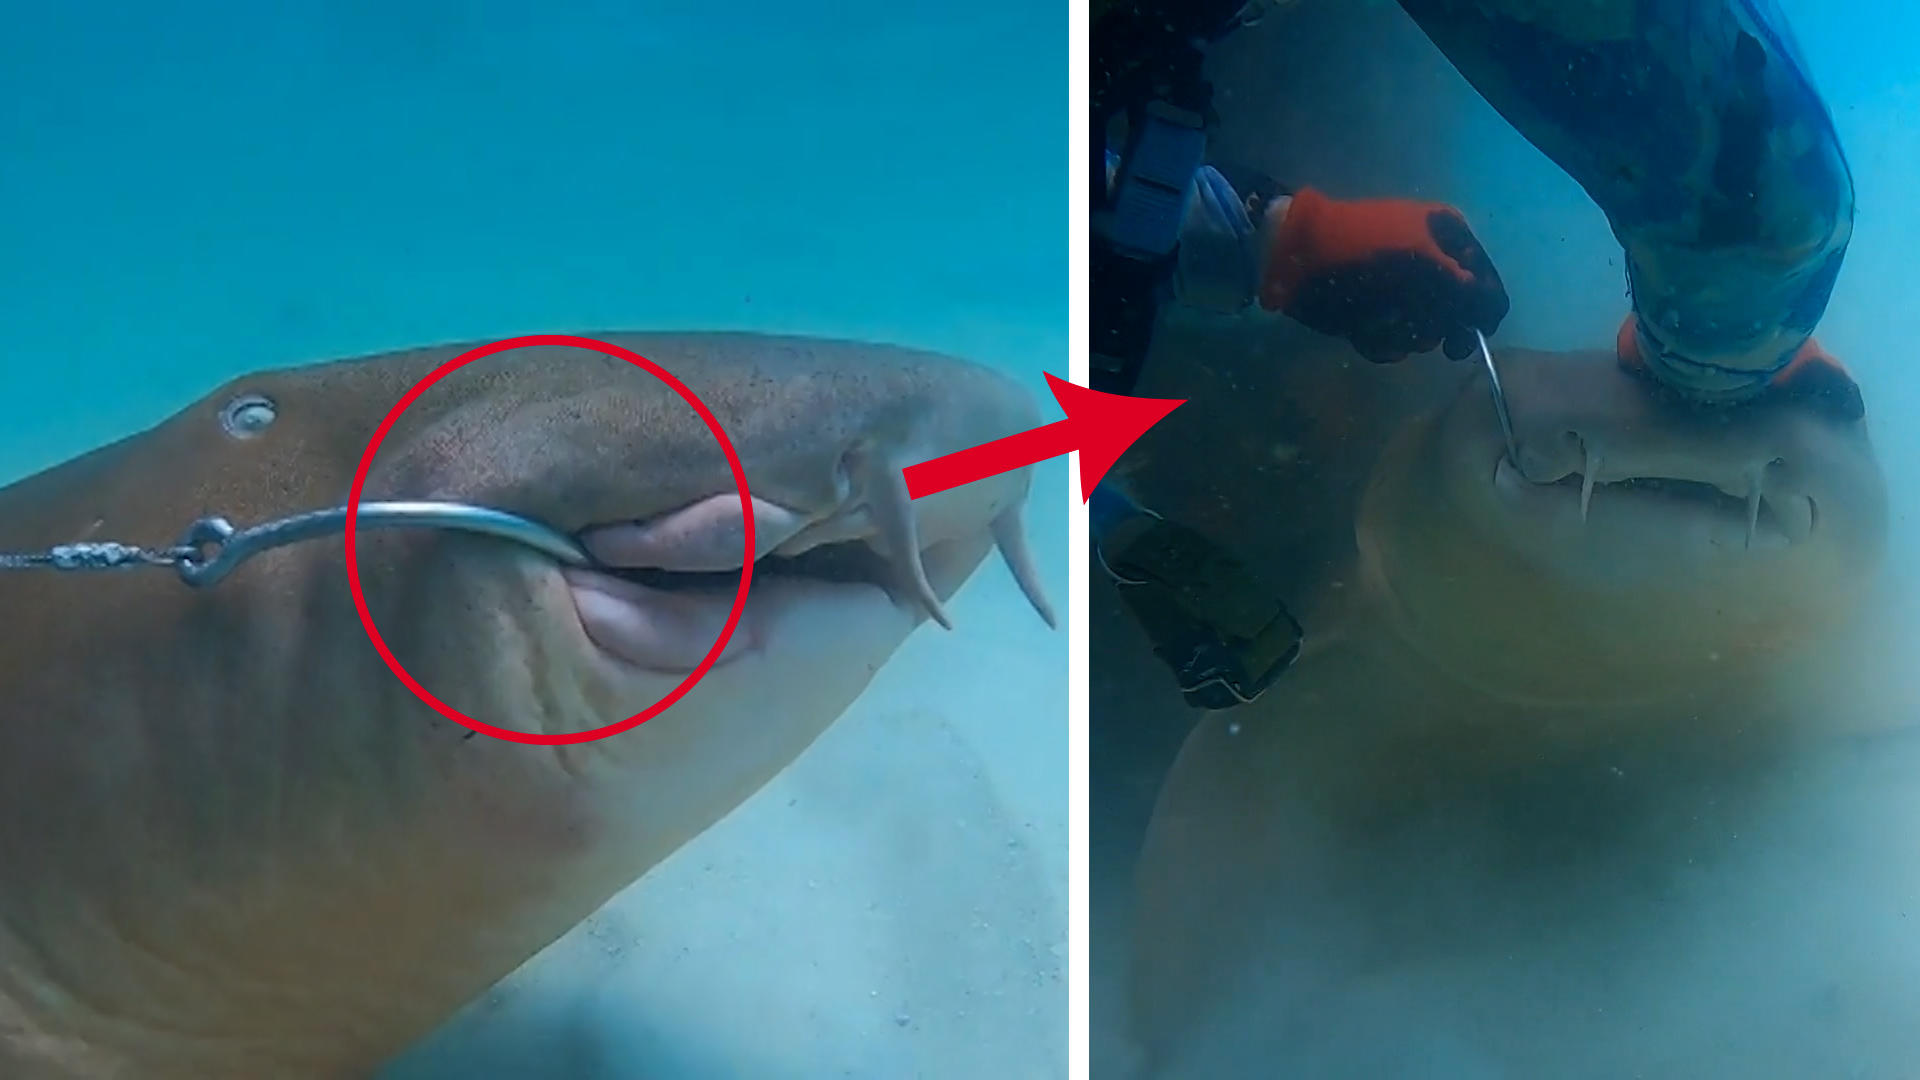 Hai hängt seit Tagen am Haken - Taucher rettet ihm das Leben Meerestier in großer Not!